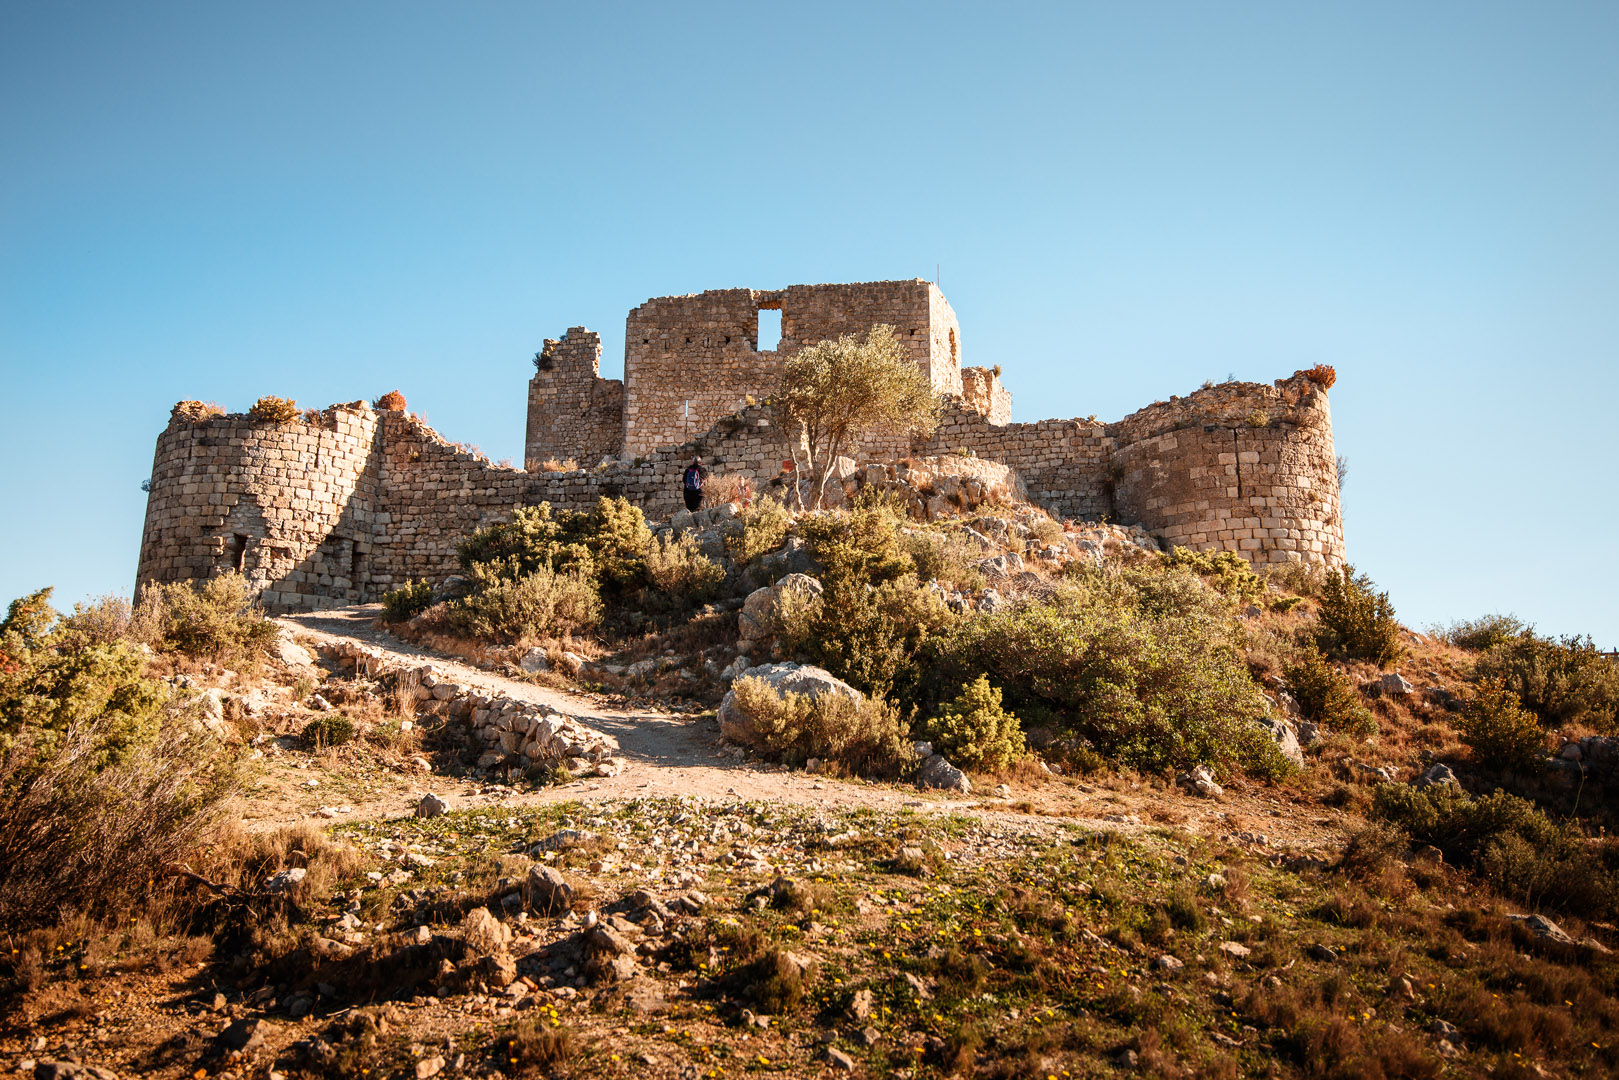 Vue du château d'Aguilar à proximité de l'enceinte